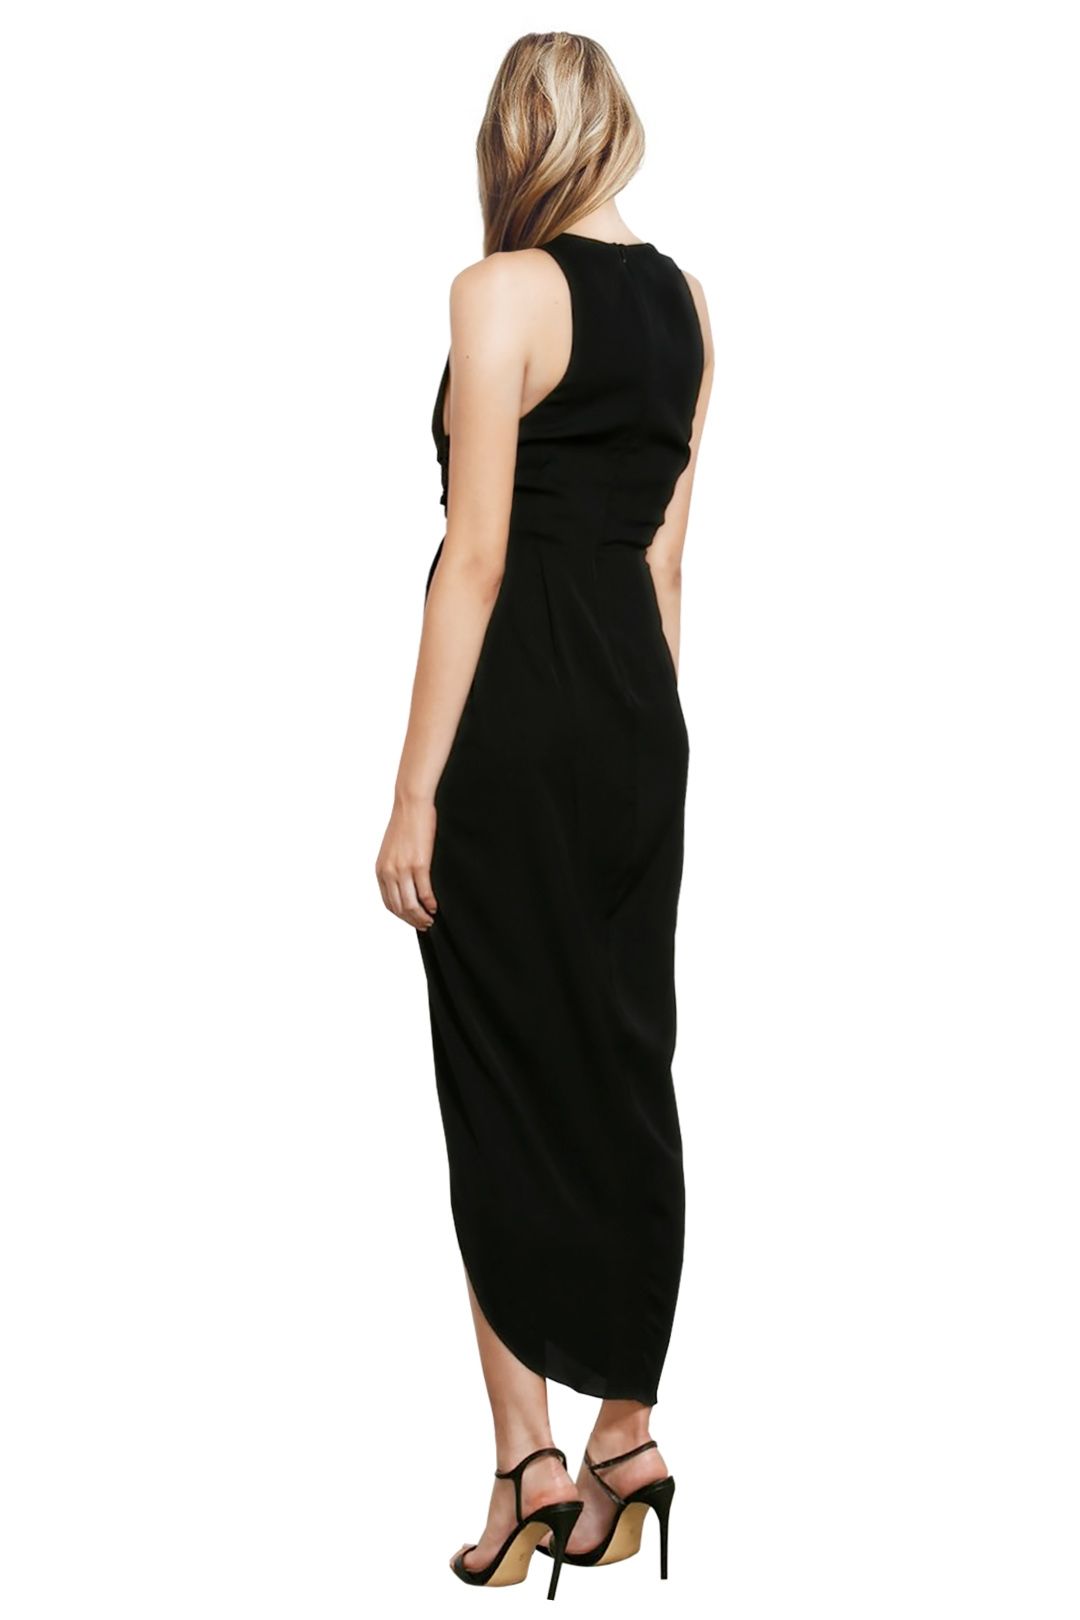 Shona Joy - Core Plunged Gathered Dress - Black - Back